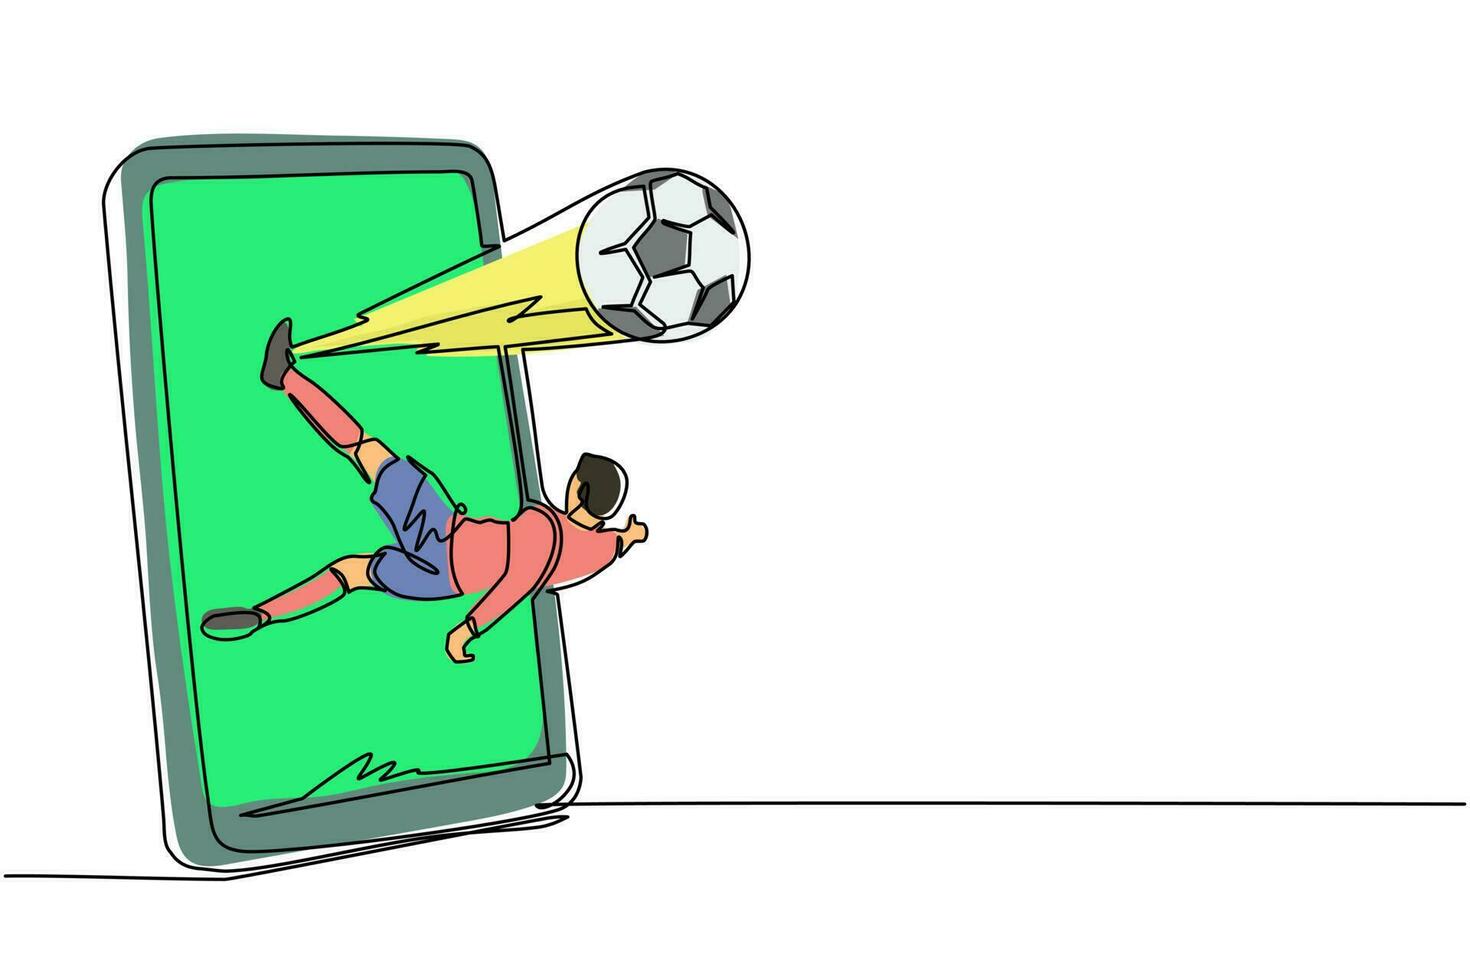 kontinuierliche einzeilige zeichnung fußballspieler kickt einen überkopfball aus dem smartphone-bildschirm. Mobiles Sportspiel. Online-Fußballspiel mit mobiler Live-App. einzeiliges zeichnen design vektorgrafik vektor